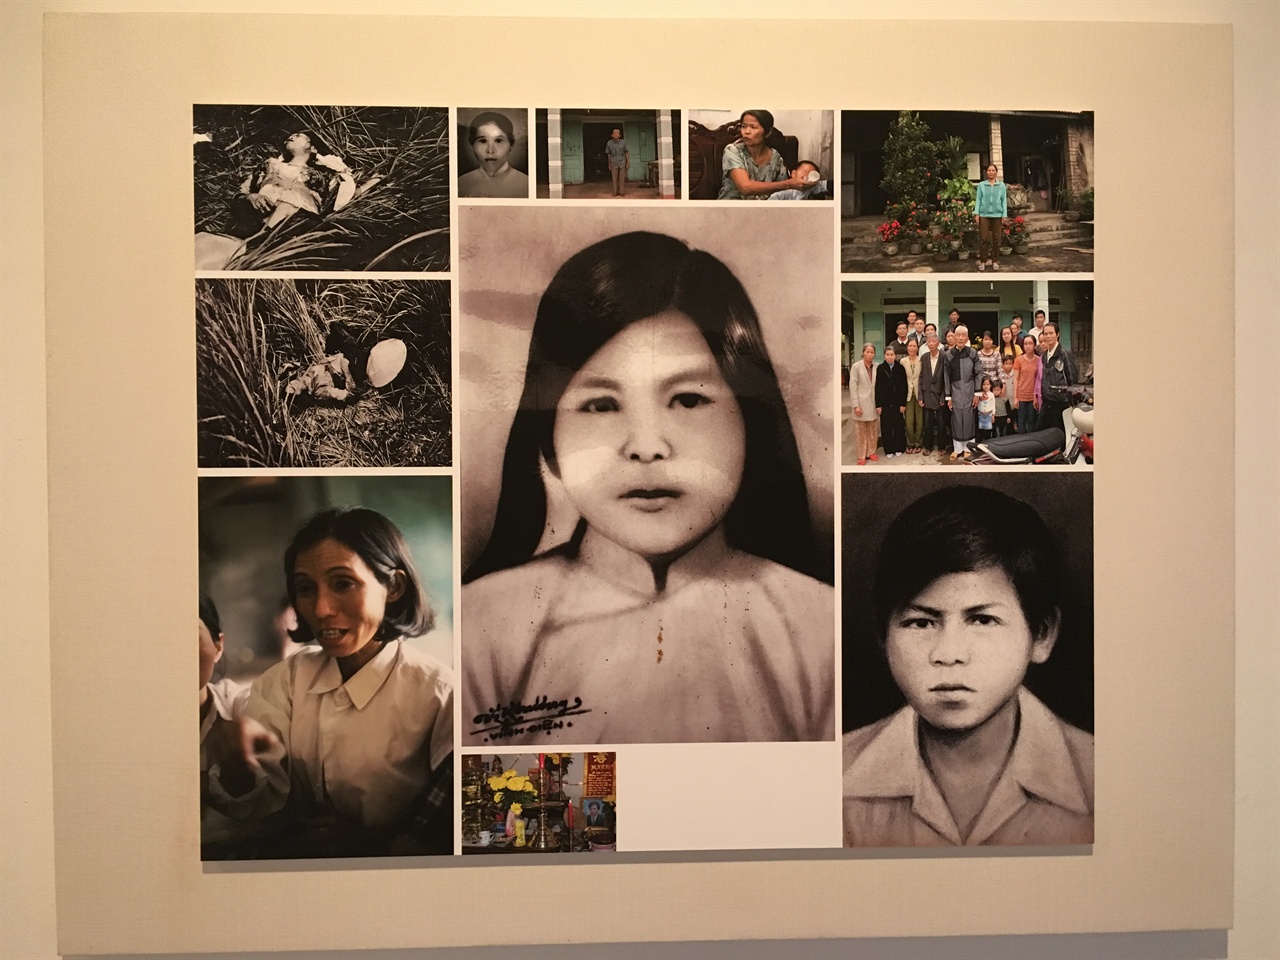 응우옌티탄의 생전 모습(가운데)과 그의 어머니 팜티깜(오른쪽 위), 그의 동생 응우옌 티엔칸(오른쪽 아래)의 사진. 왼쪽 아래는 응우옌티탄의 마지막 모습을 증언하는 생존자 쩐티투언의 사진.